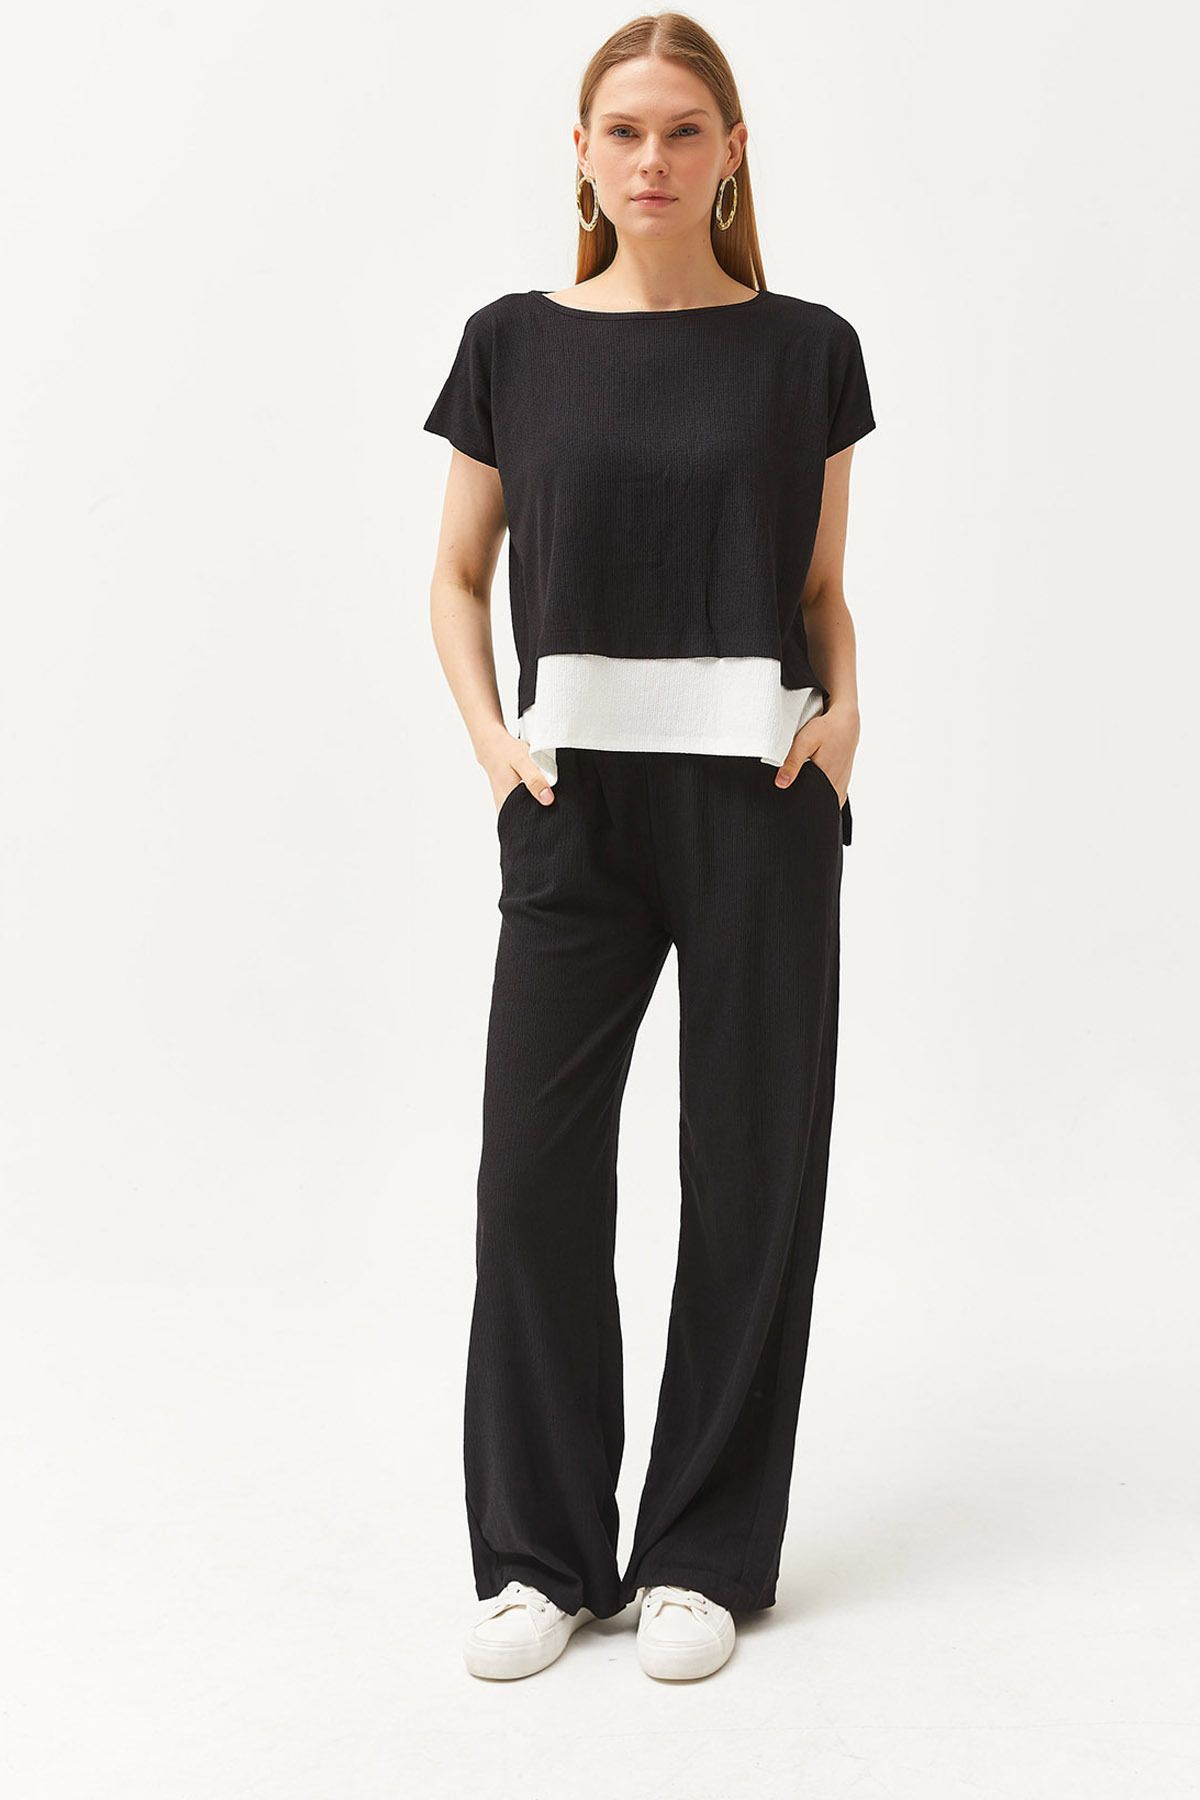 Olalook Kadın Siyah Üst Bluz Alt Pantolon Takım TKM-19000273